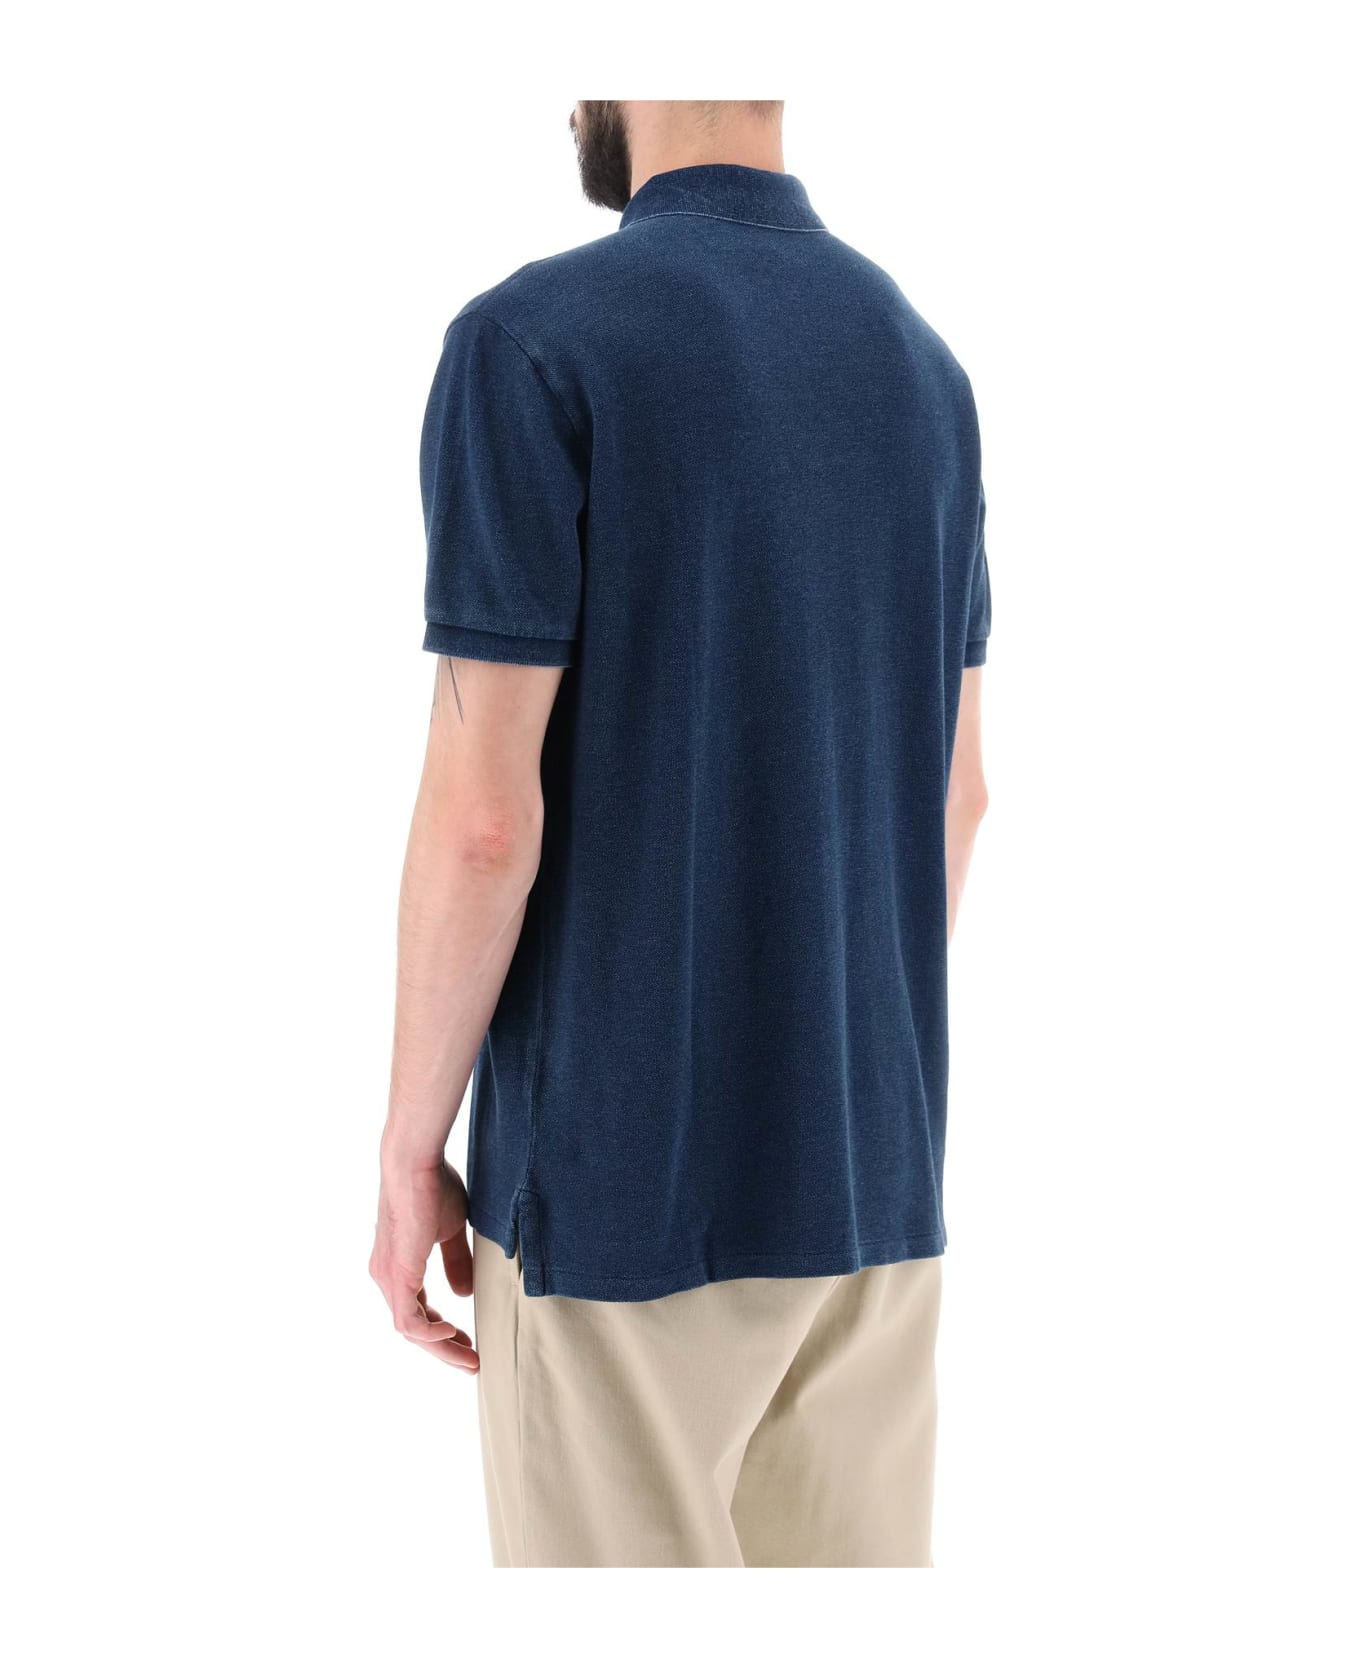 Polo Ralph Lauren Pique Cotton Polo Shirt - DARK INDIGO (Blue)